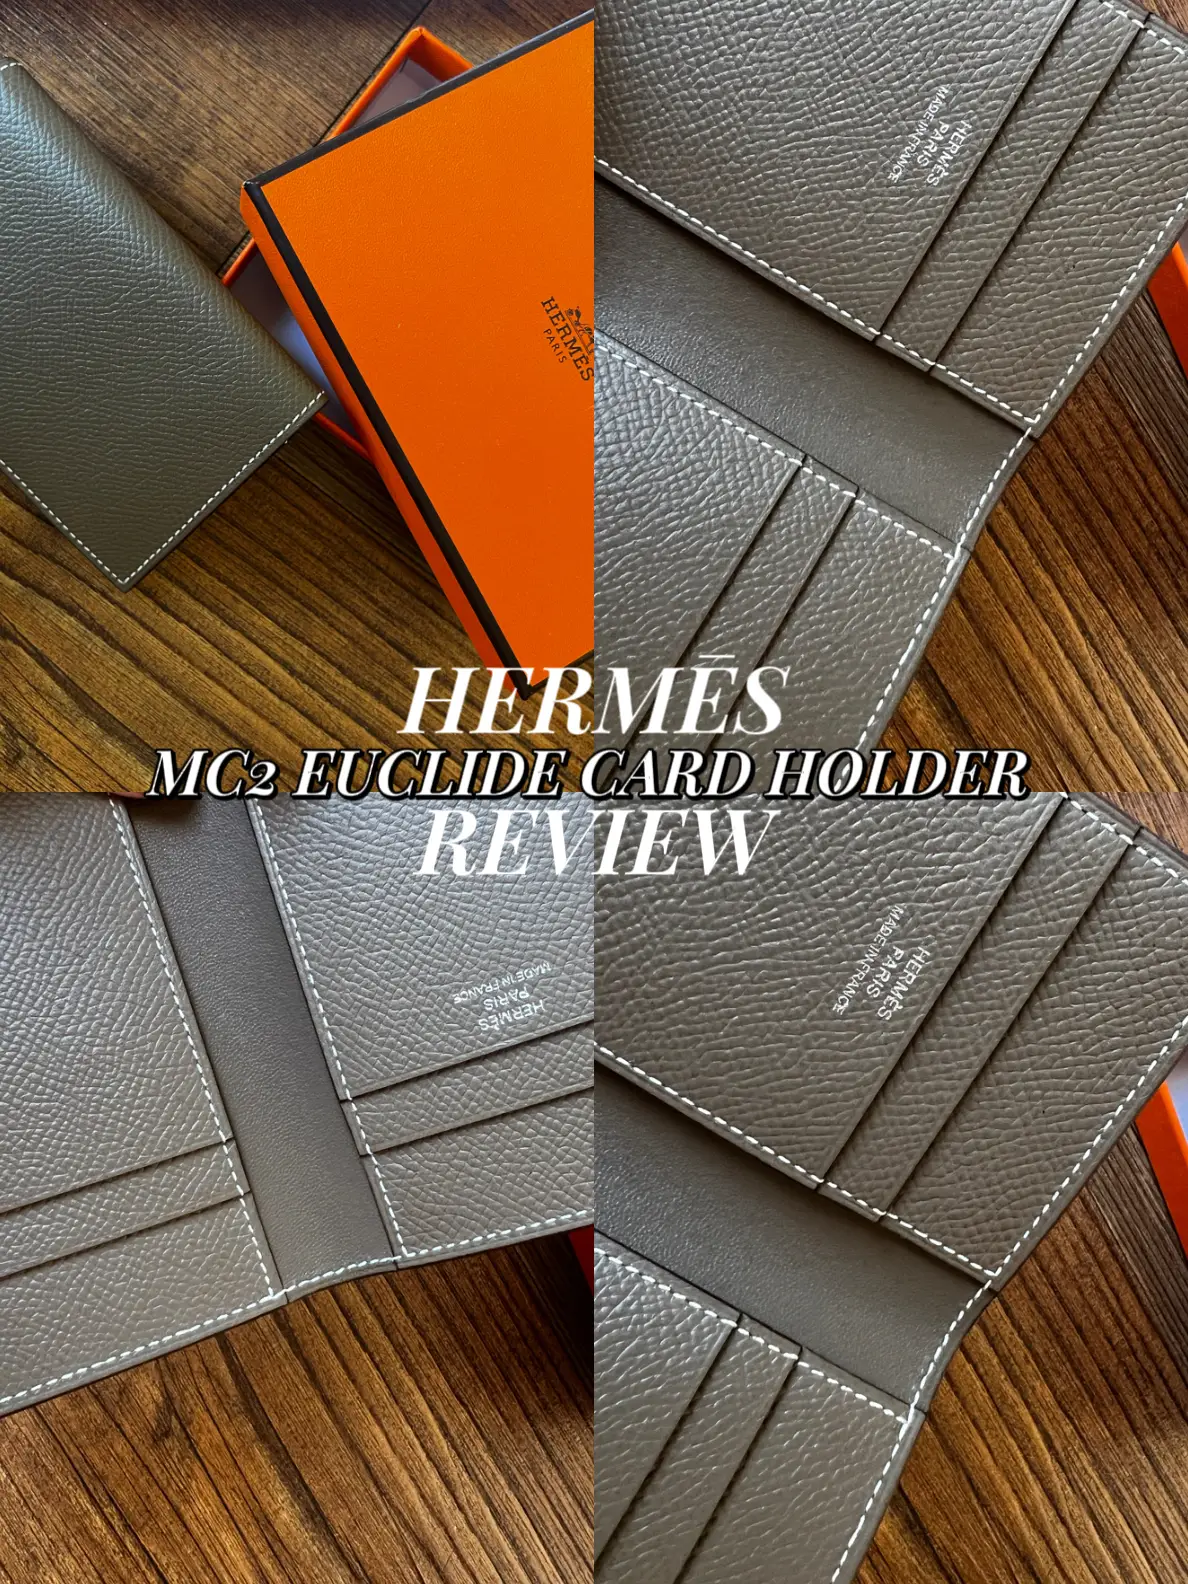 Hermes MC2 Euclide Cardholder